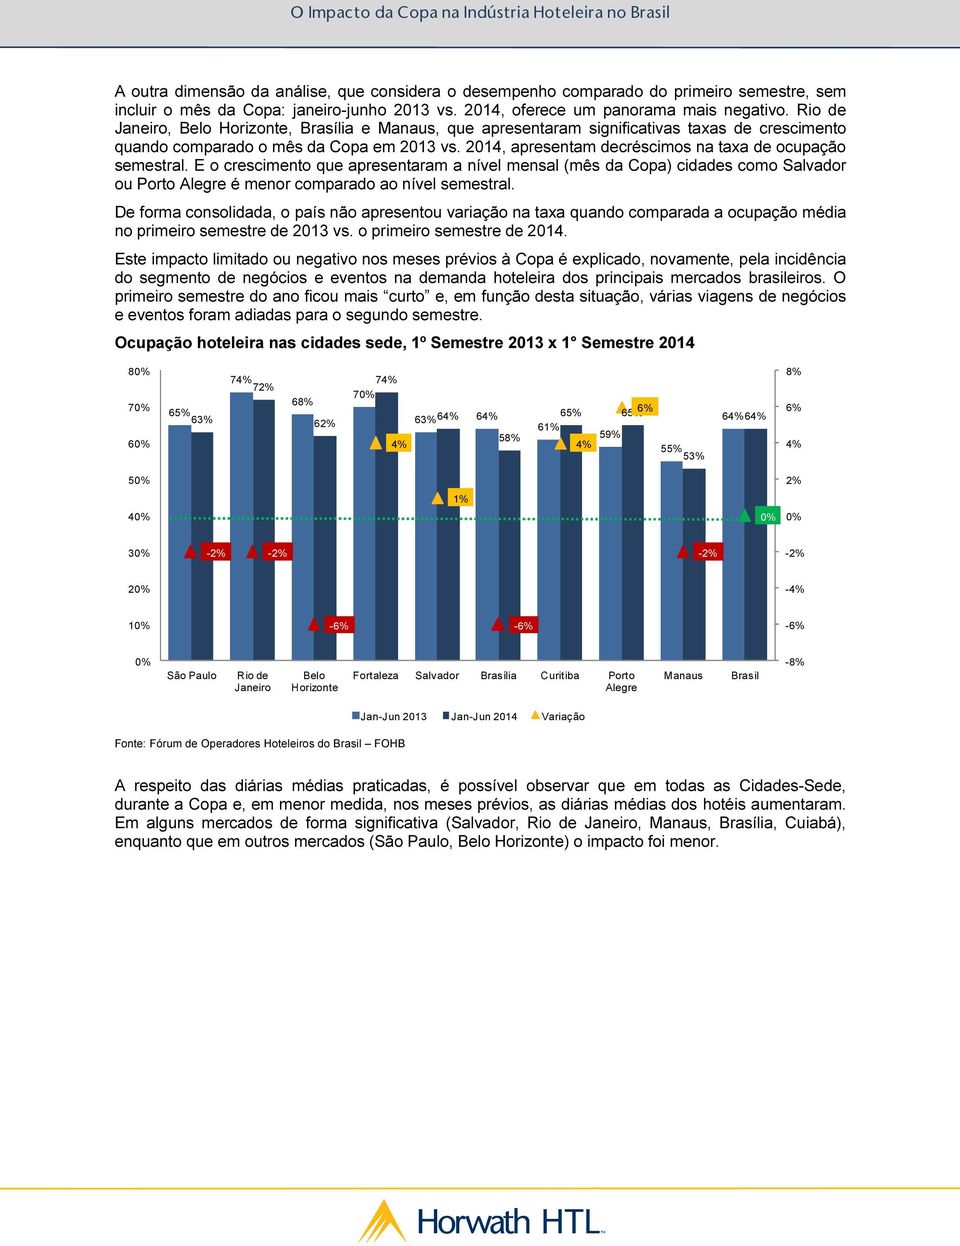 2014, apresentam decréscimos na taxa de ocupação semestral. E o crescimento que apresentaram a nível mensal (mês da Copa) cidades como Salvador ou Porto Alegre é menor comparado ao nível semestral.